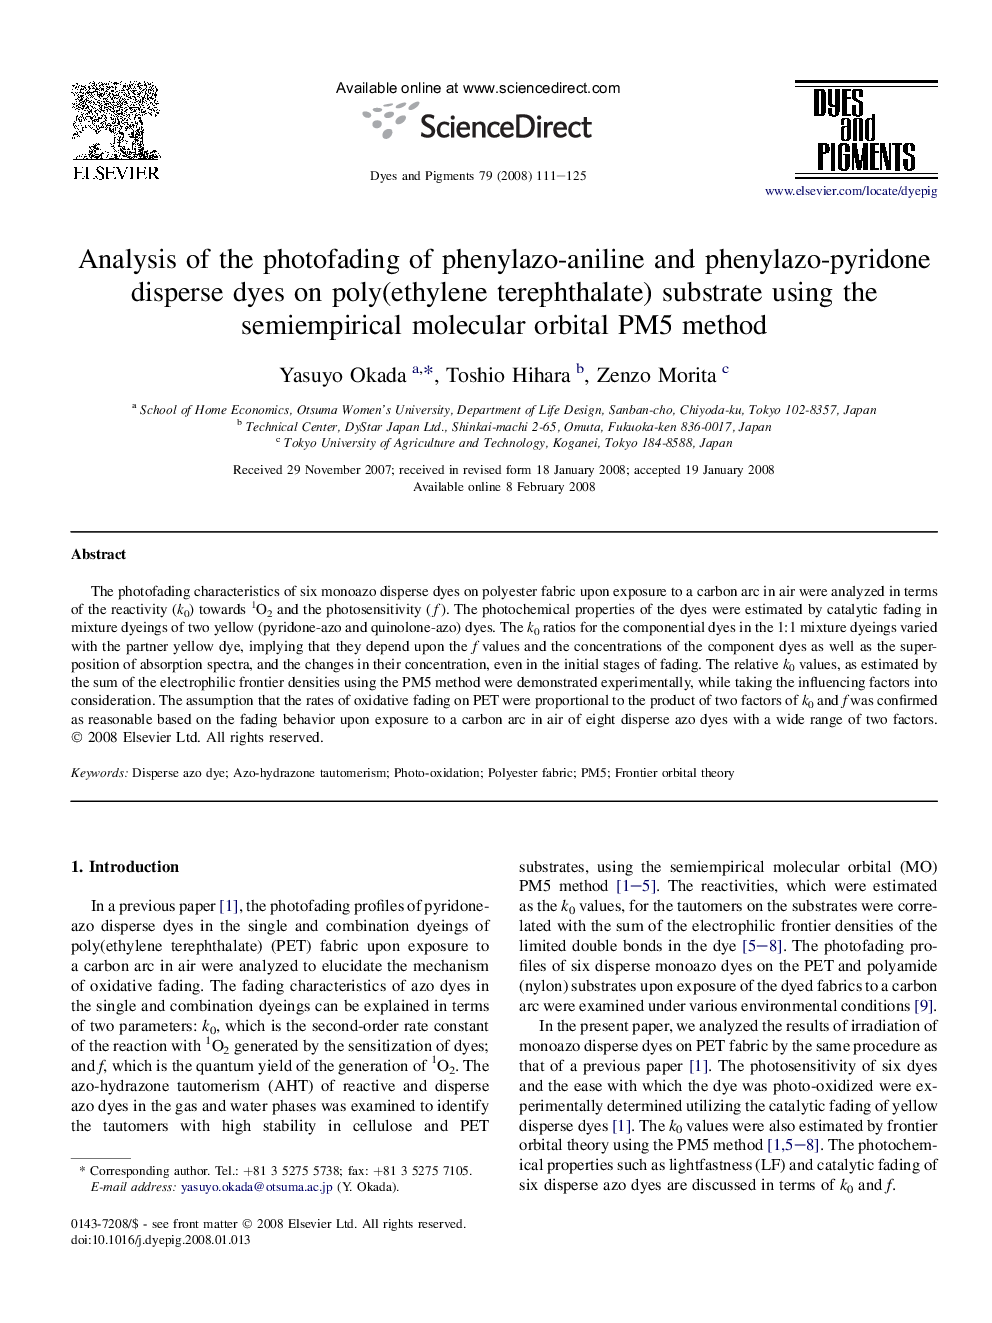 Analysis of the photofading of phenylazo-aniline and phenylazo-pyridone disperse dyes on poly(ethylene terephthalate) substrate using the semiempirical molecular orbital PM5 method